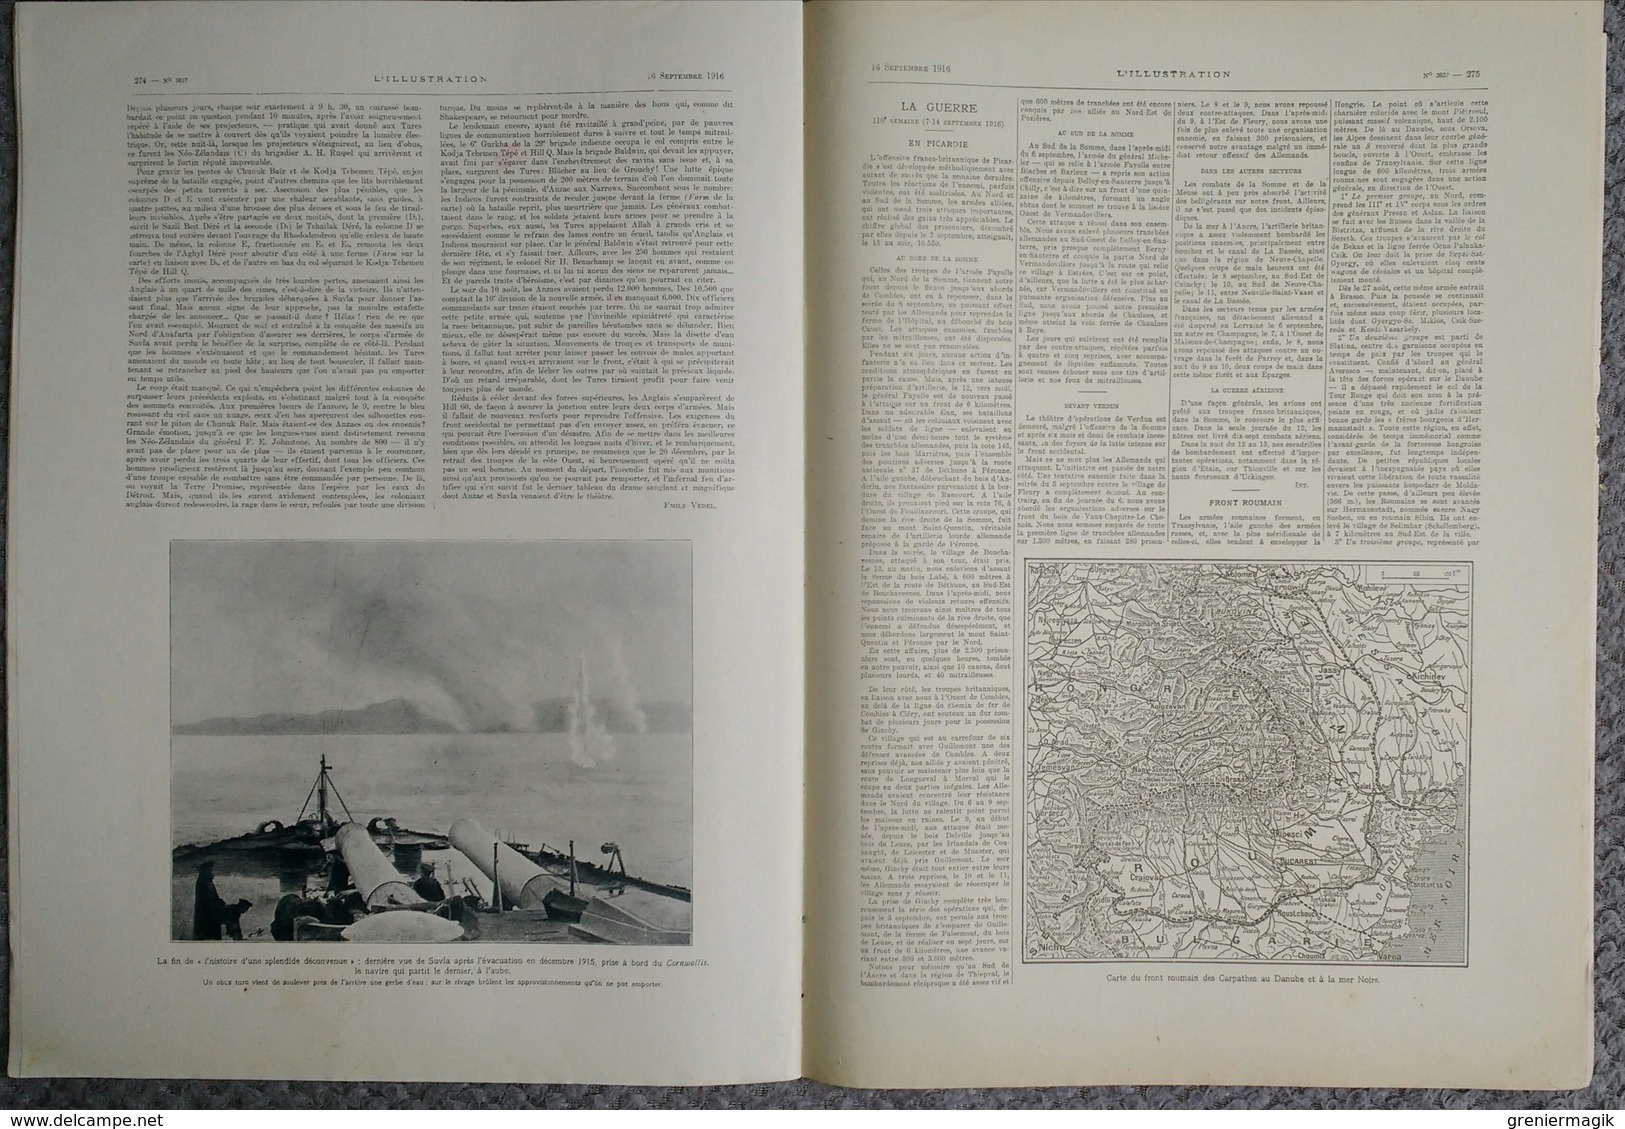 L'Illustration 3837 16 septembre 1916 Anzac et Sulva/Pierre Loti/Salonique/Cléry-sur-Somme/Zeppelin L 21 abattu